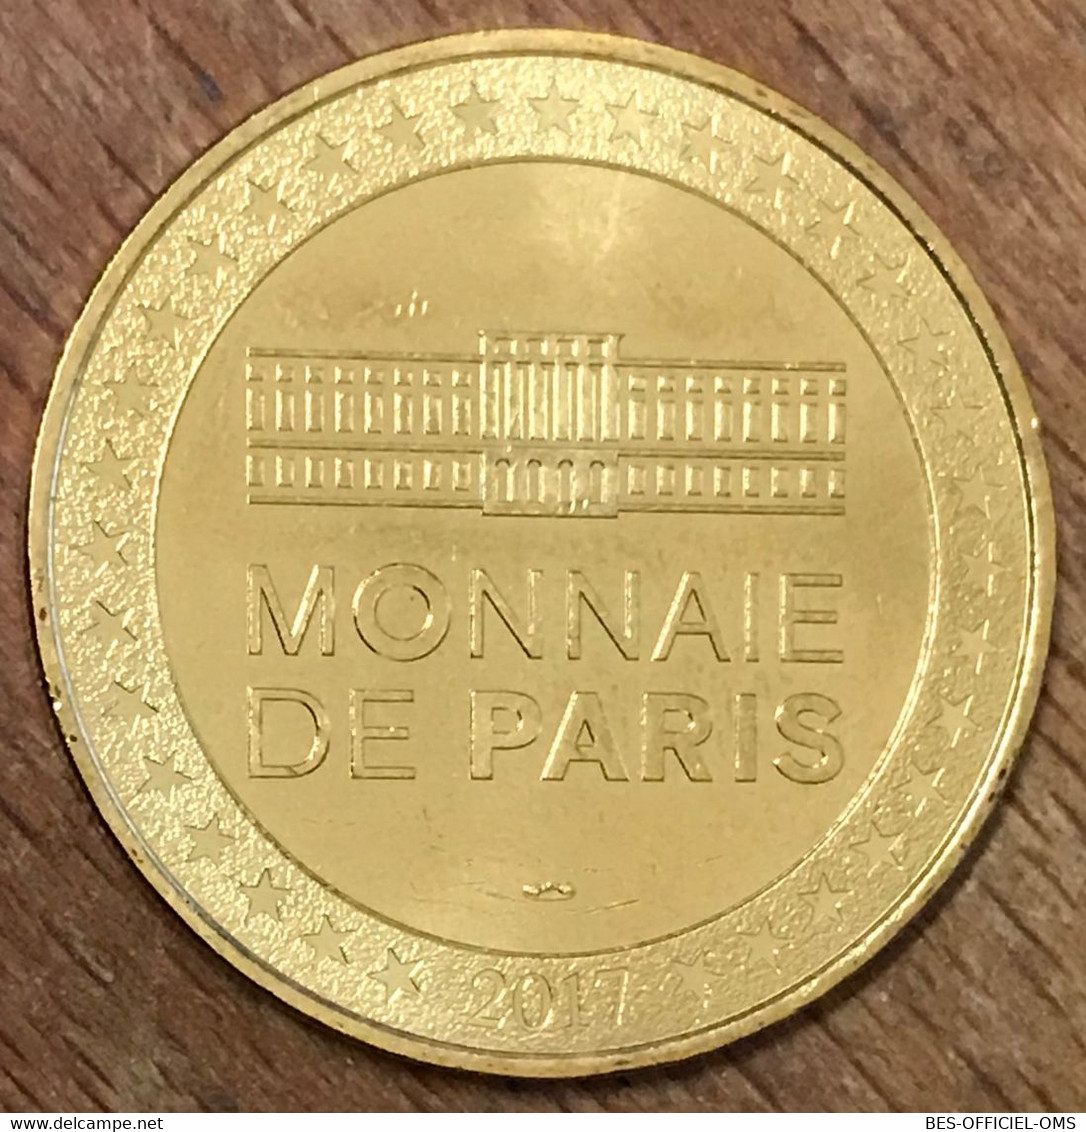 75012 PARIS CONCOURS LÉPINE MDP 2017 MÉDAILLE SOUVENIR MONNAIE DE PARIS JETON TOURISTIQUE TOKENS MEDALS COINS INVENTEURS - 2017